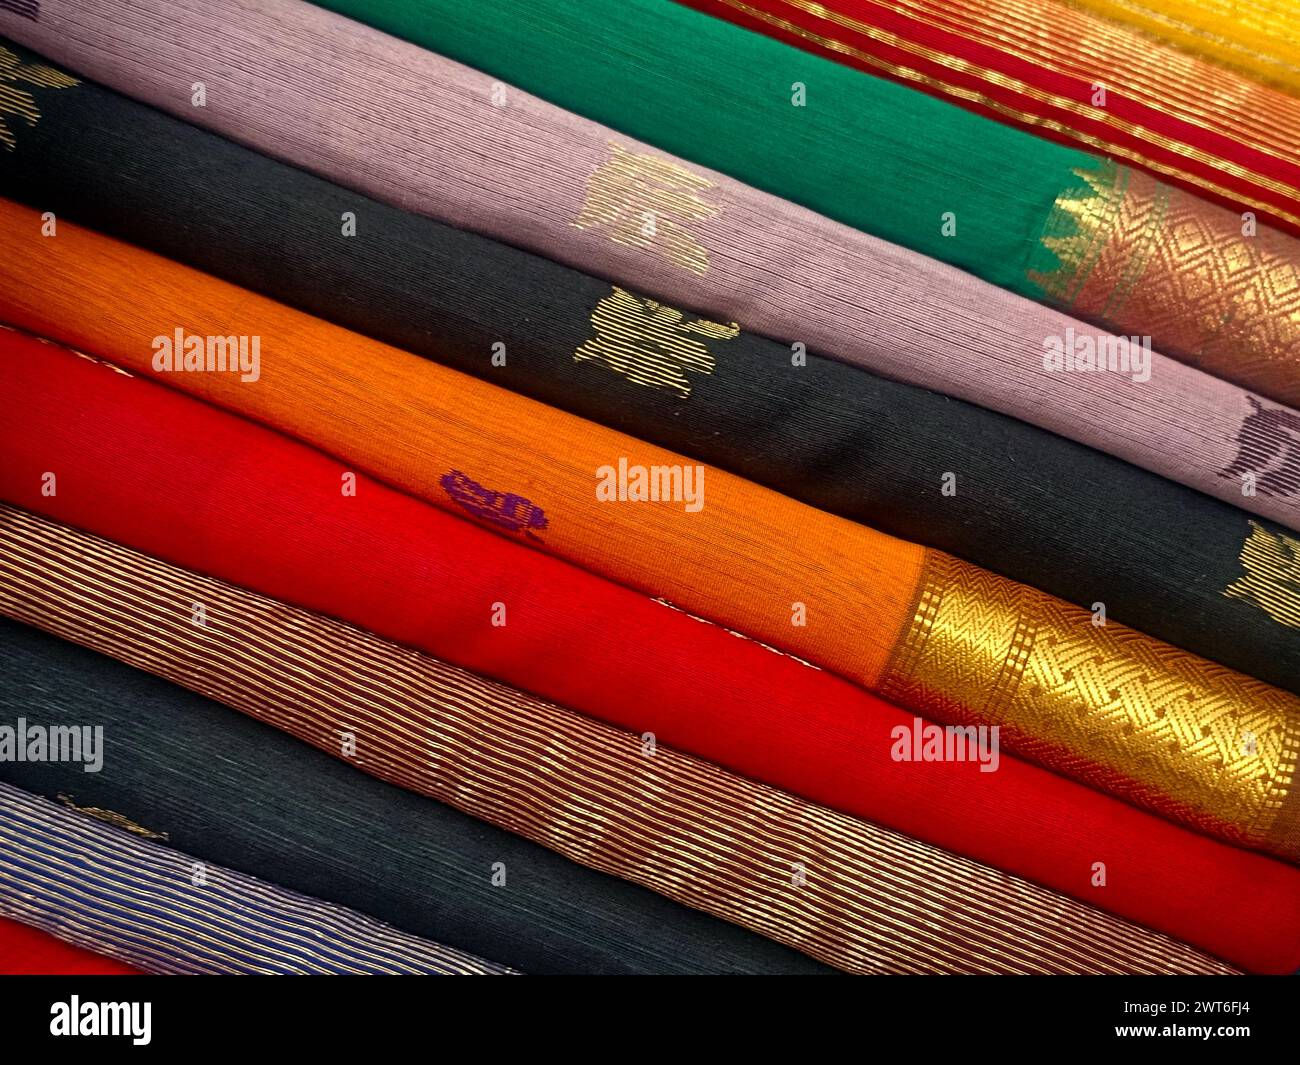 Vue rapprochée de saris ou de sarees empilés dans l'affichage d'un magasin de détail, pour une utilisation comme arrière-plan de textiles indiens. Banque D'Images